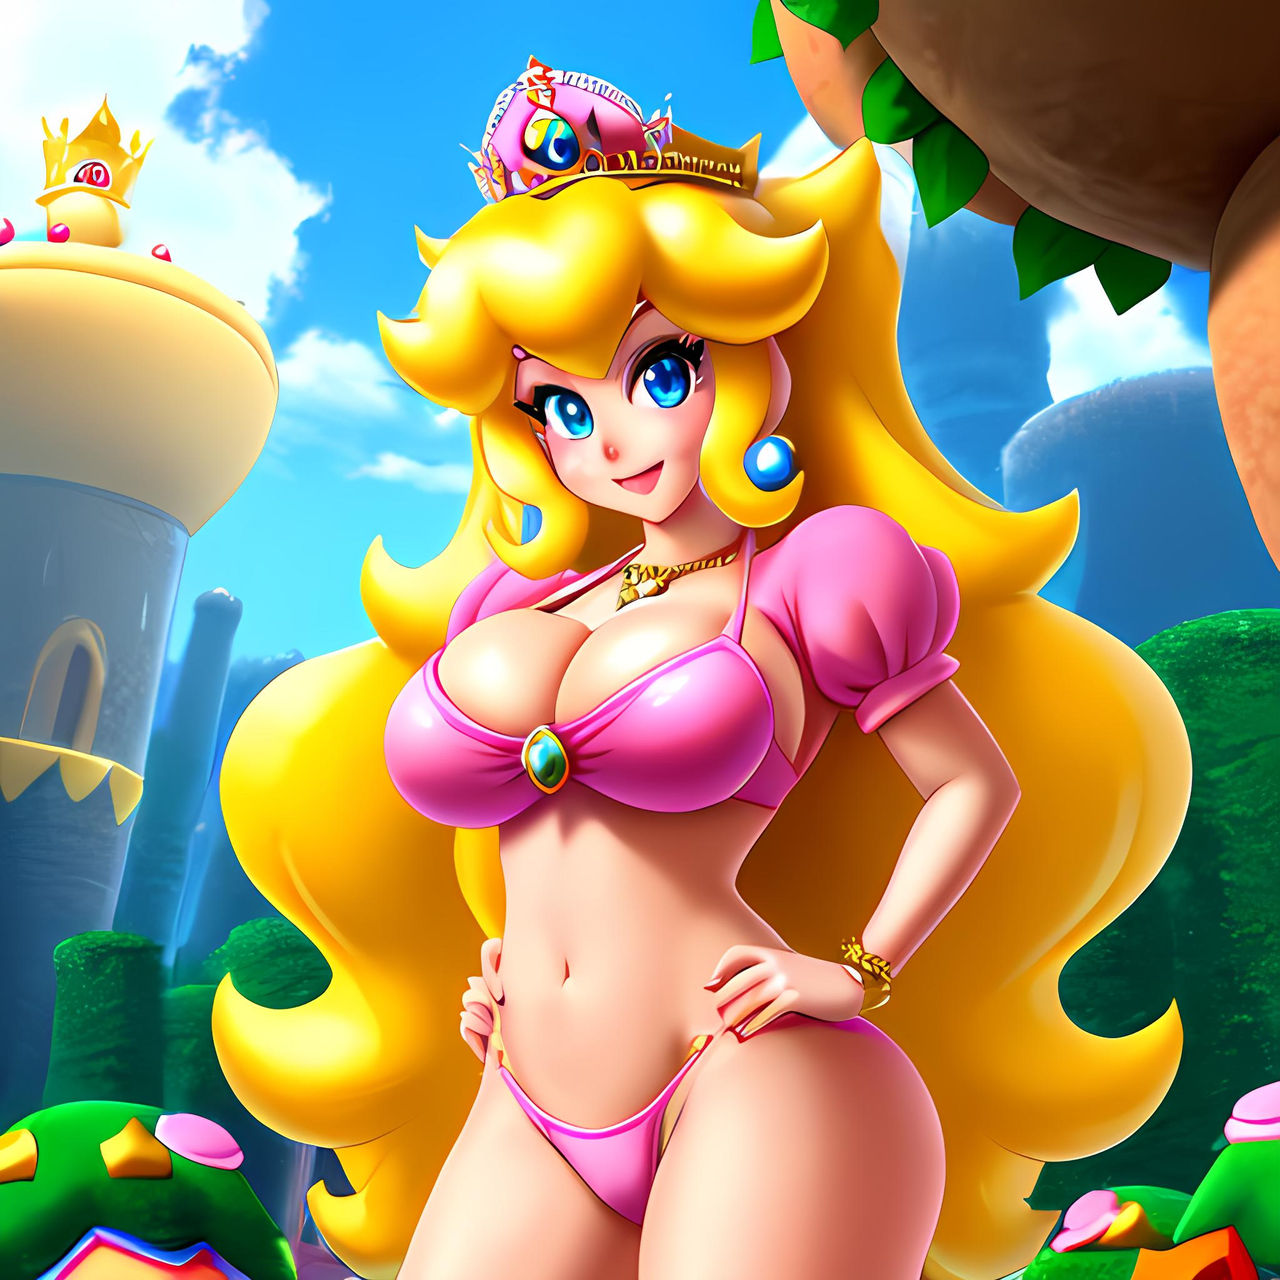 Mario peach nude